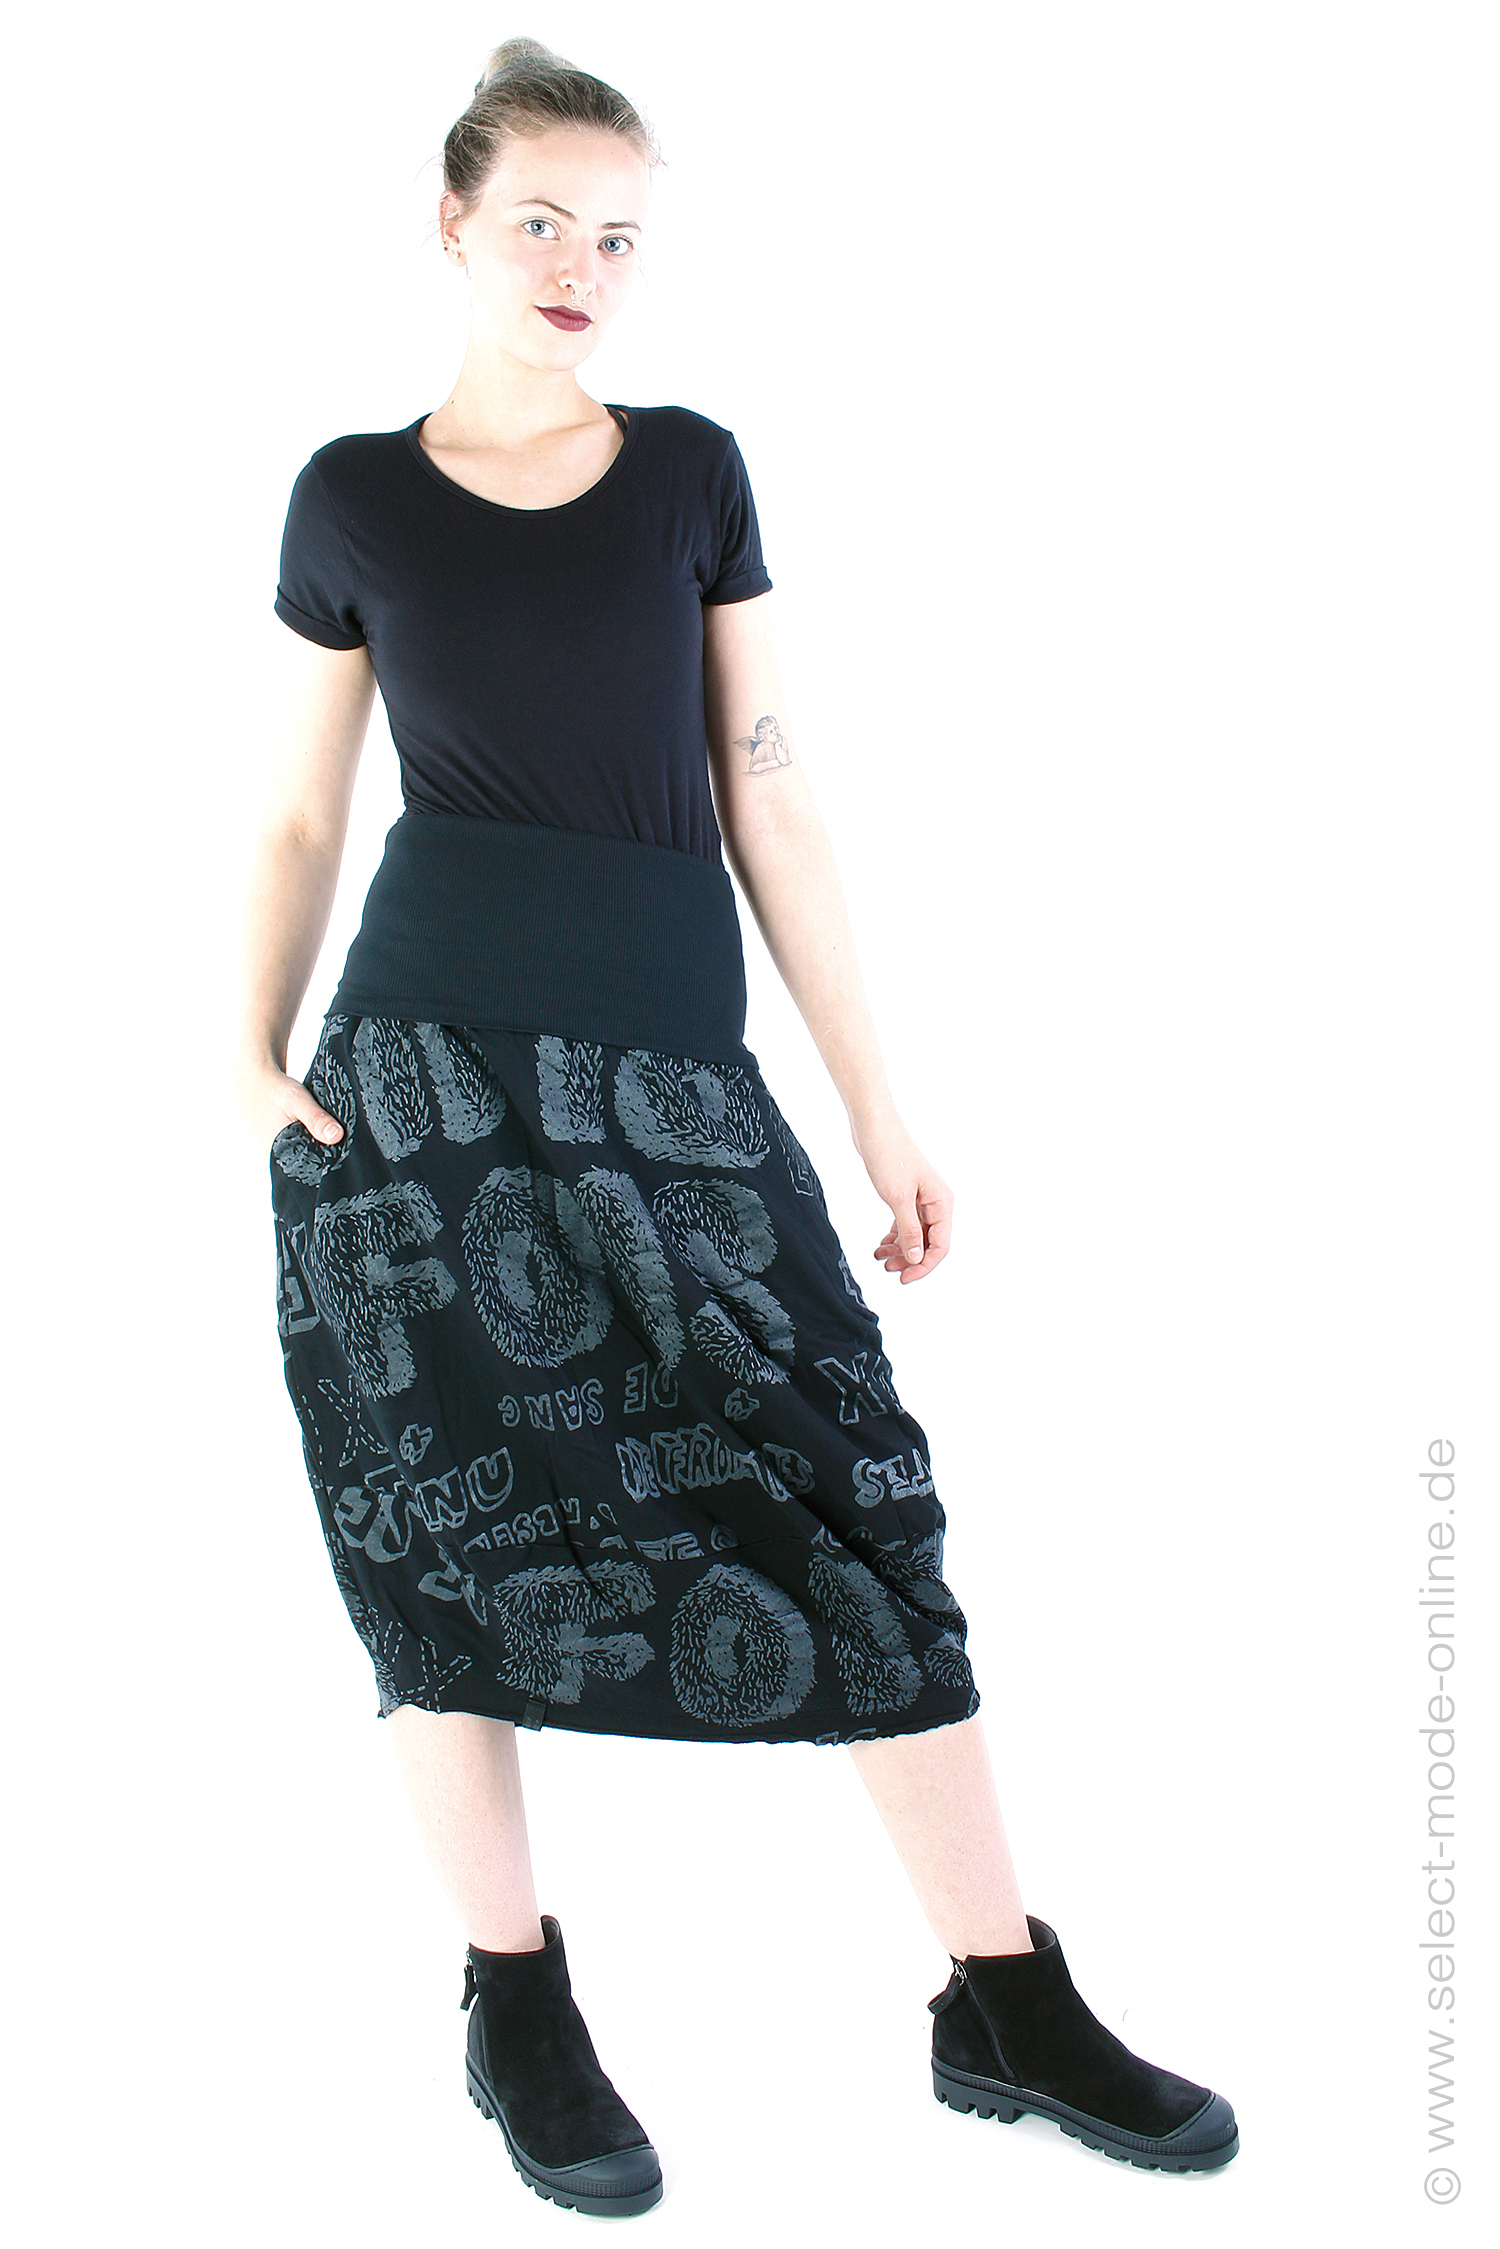 Tulip skirt / dress - Black shiny print - 2243290310